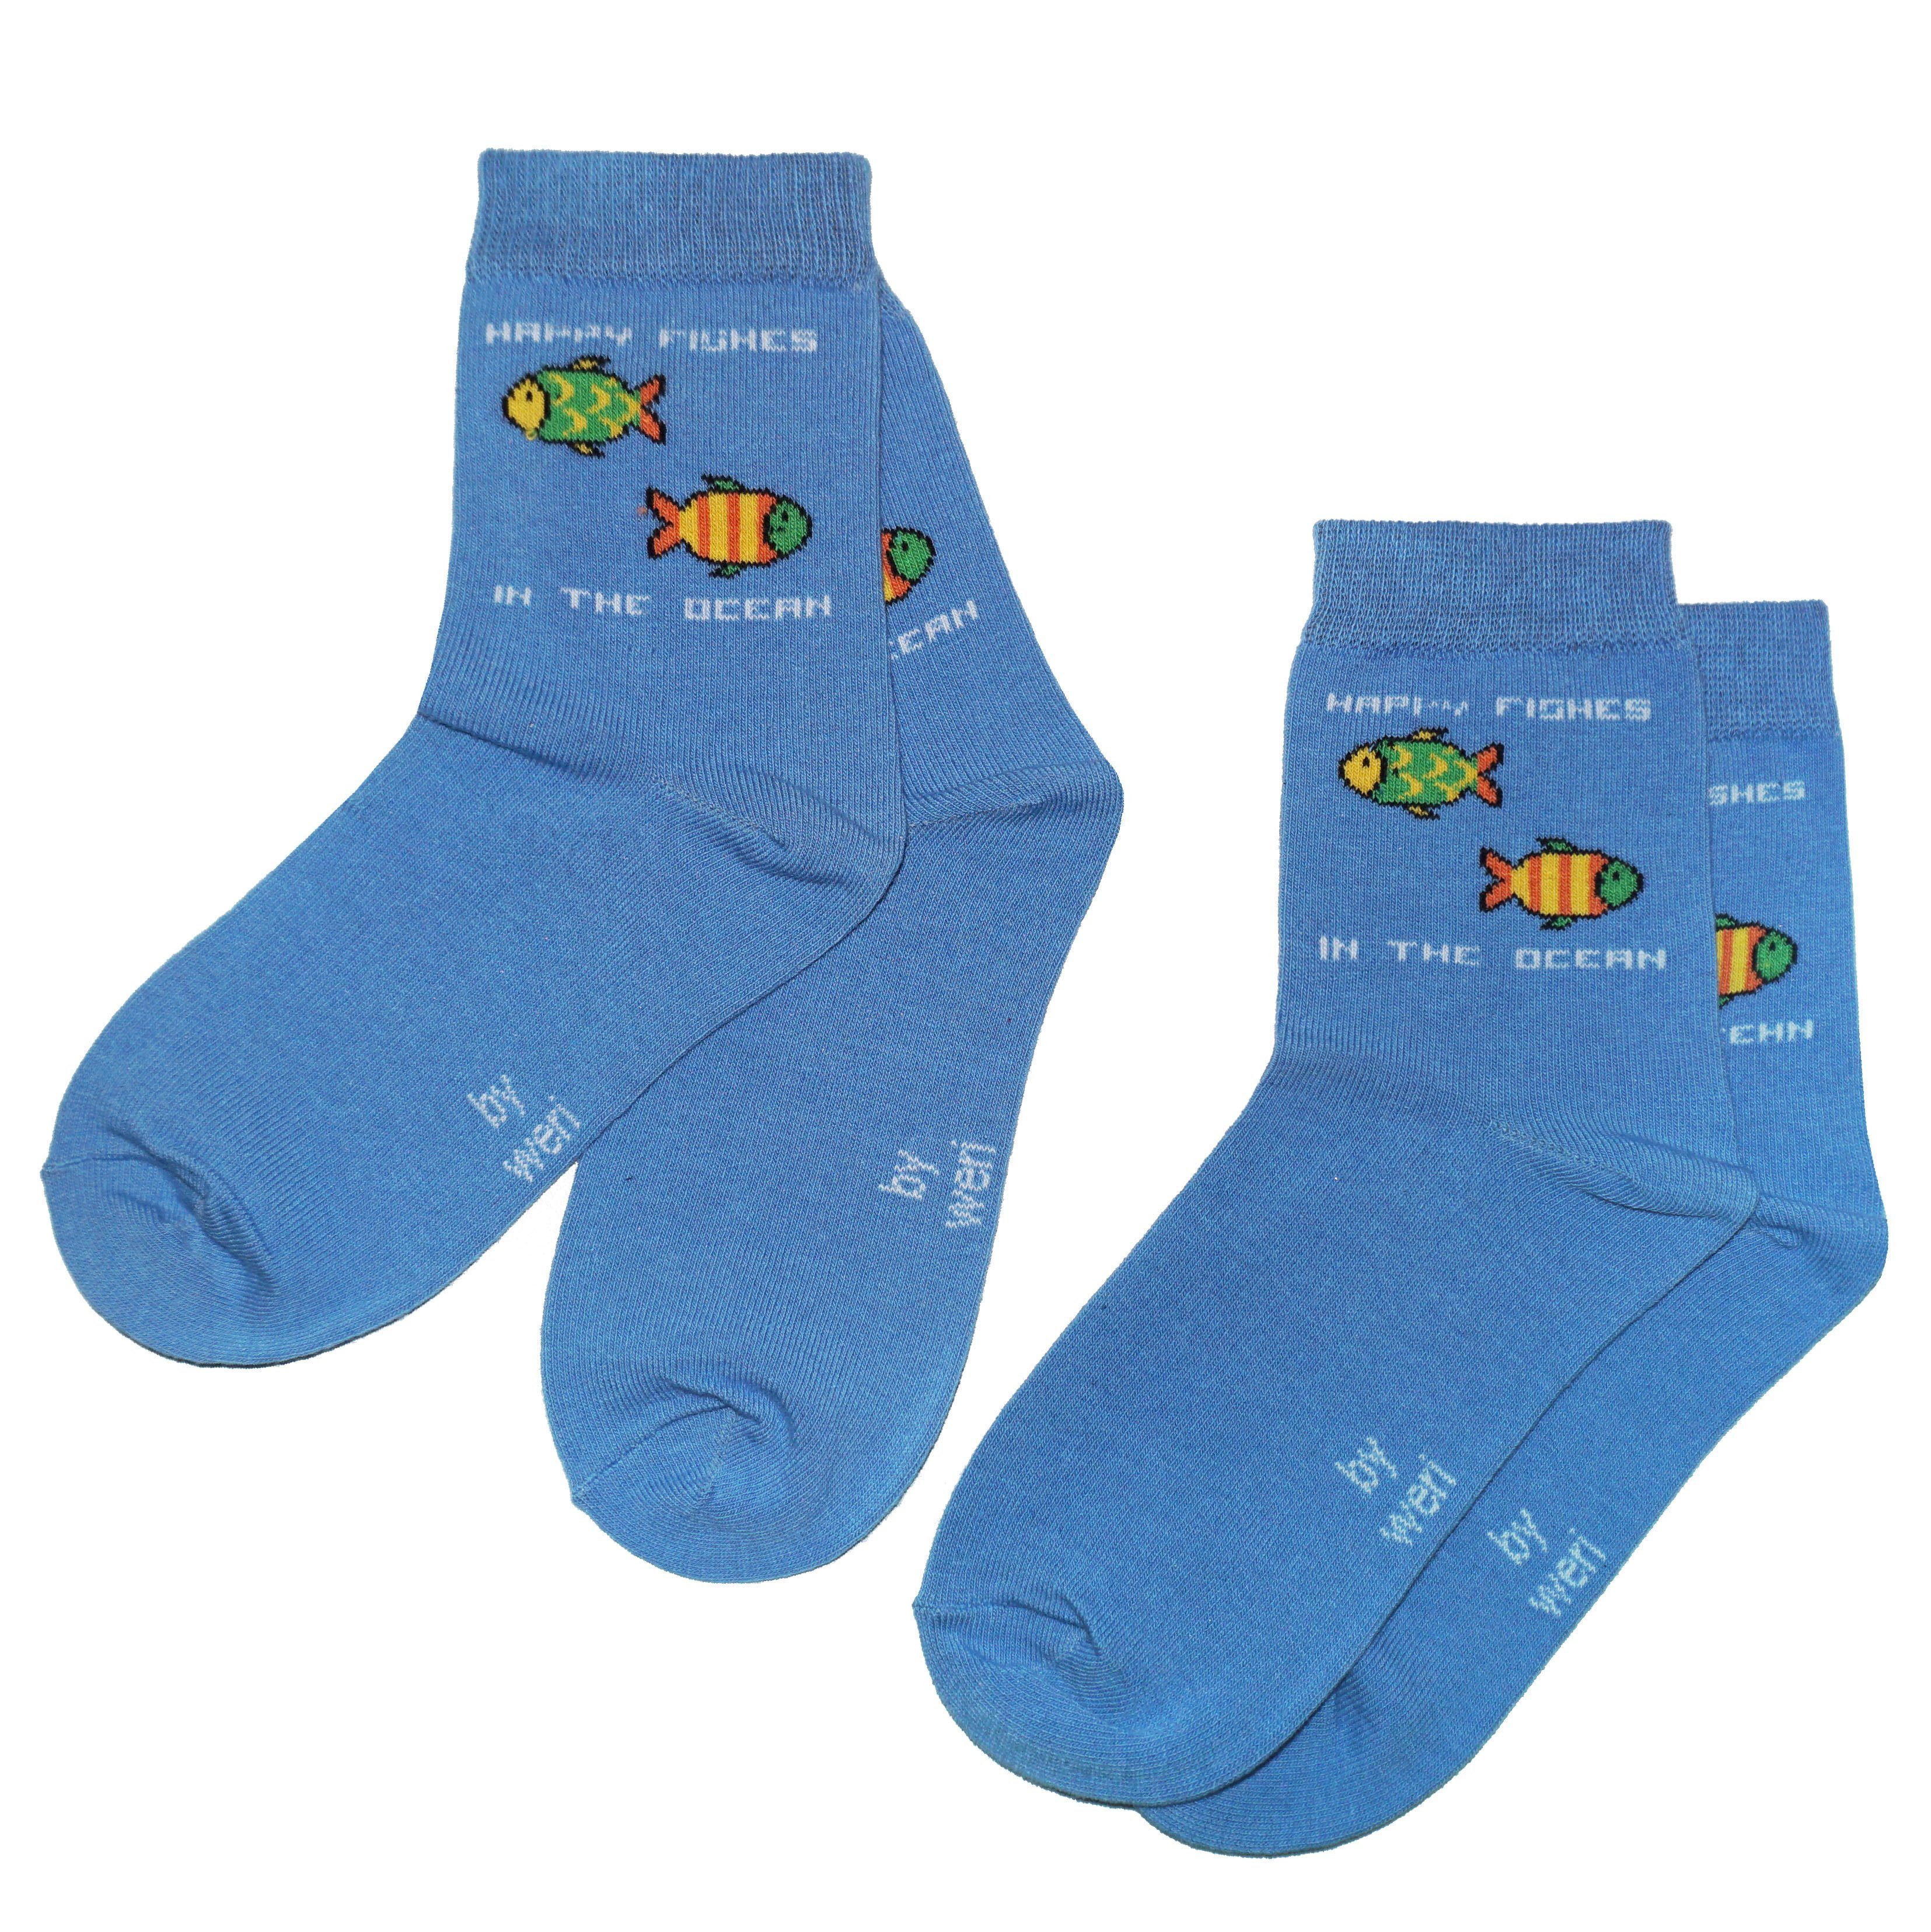 Wäsche Sportsocken WERI SPEZIALS Strumpfhersteller GmbH Socken Kinder Socken 2-er Pack für Jungs Happy Fishes aus Baumwolle (Set